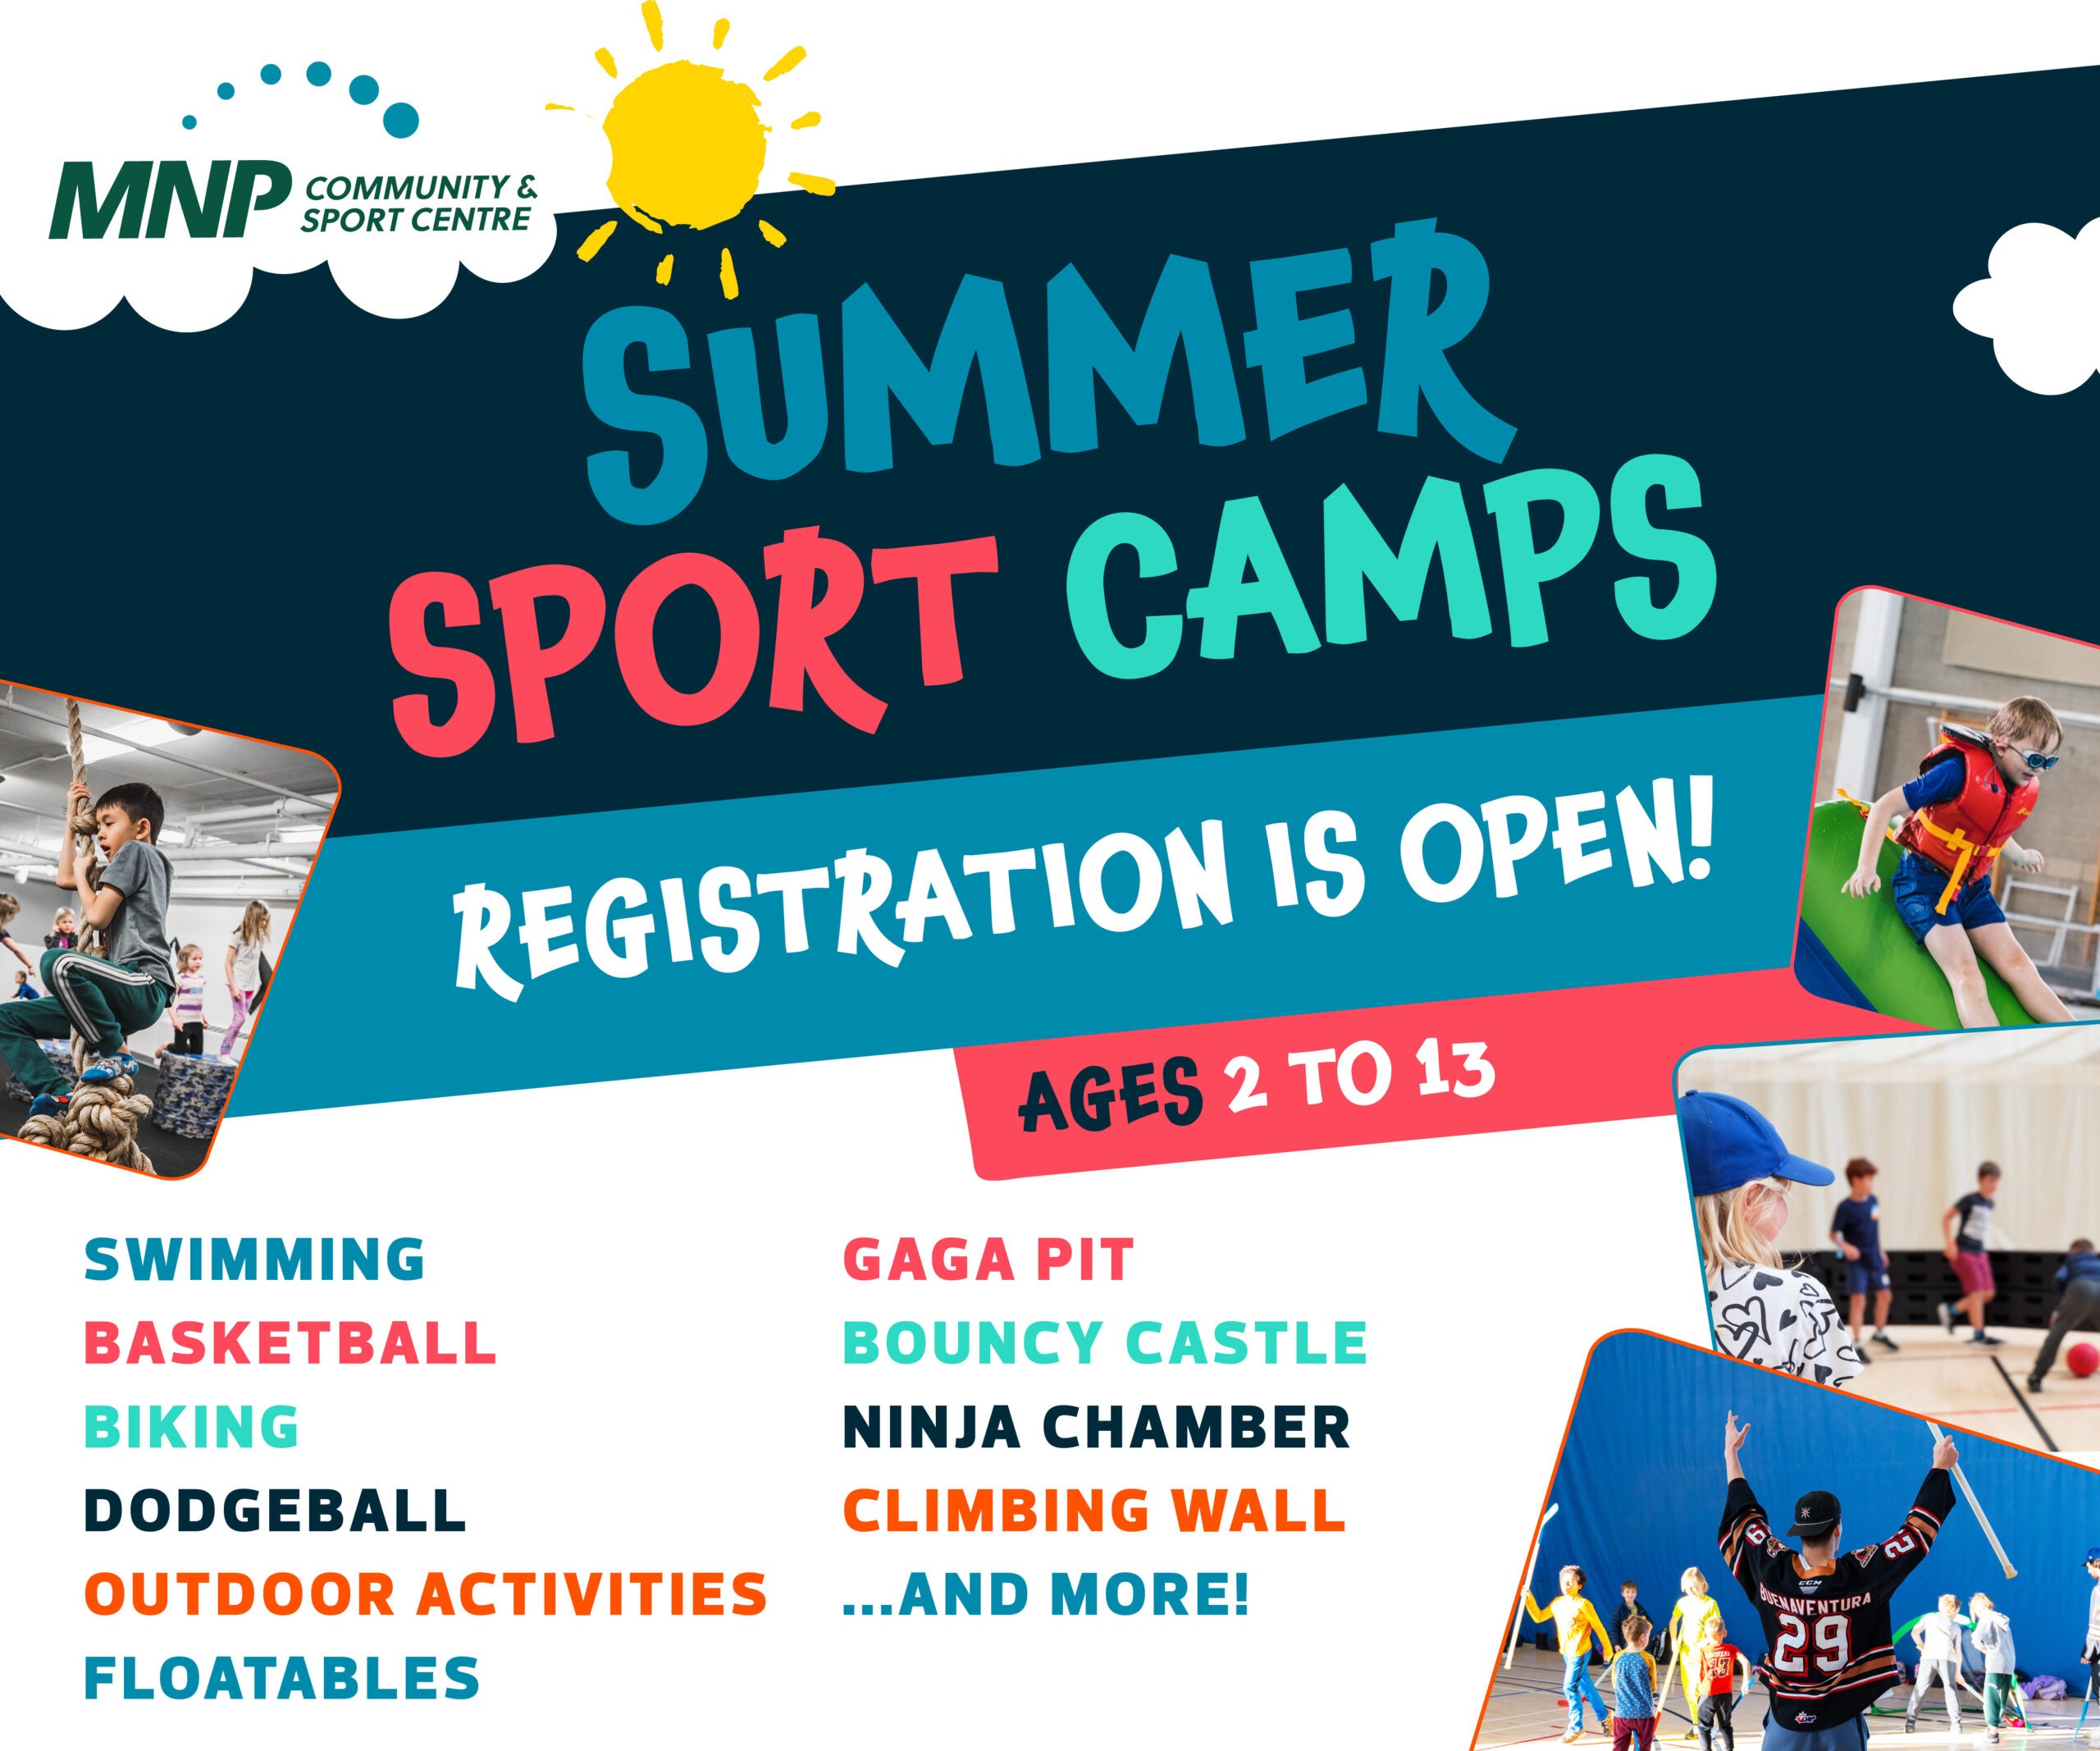 Sommercamps des MNP Sportzentrums (Familienspaß Calgary)